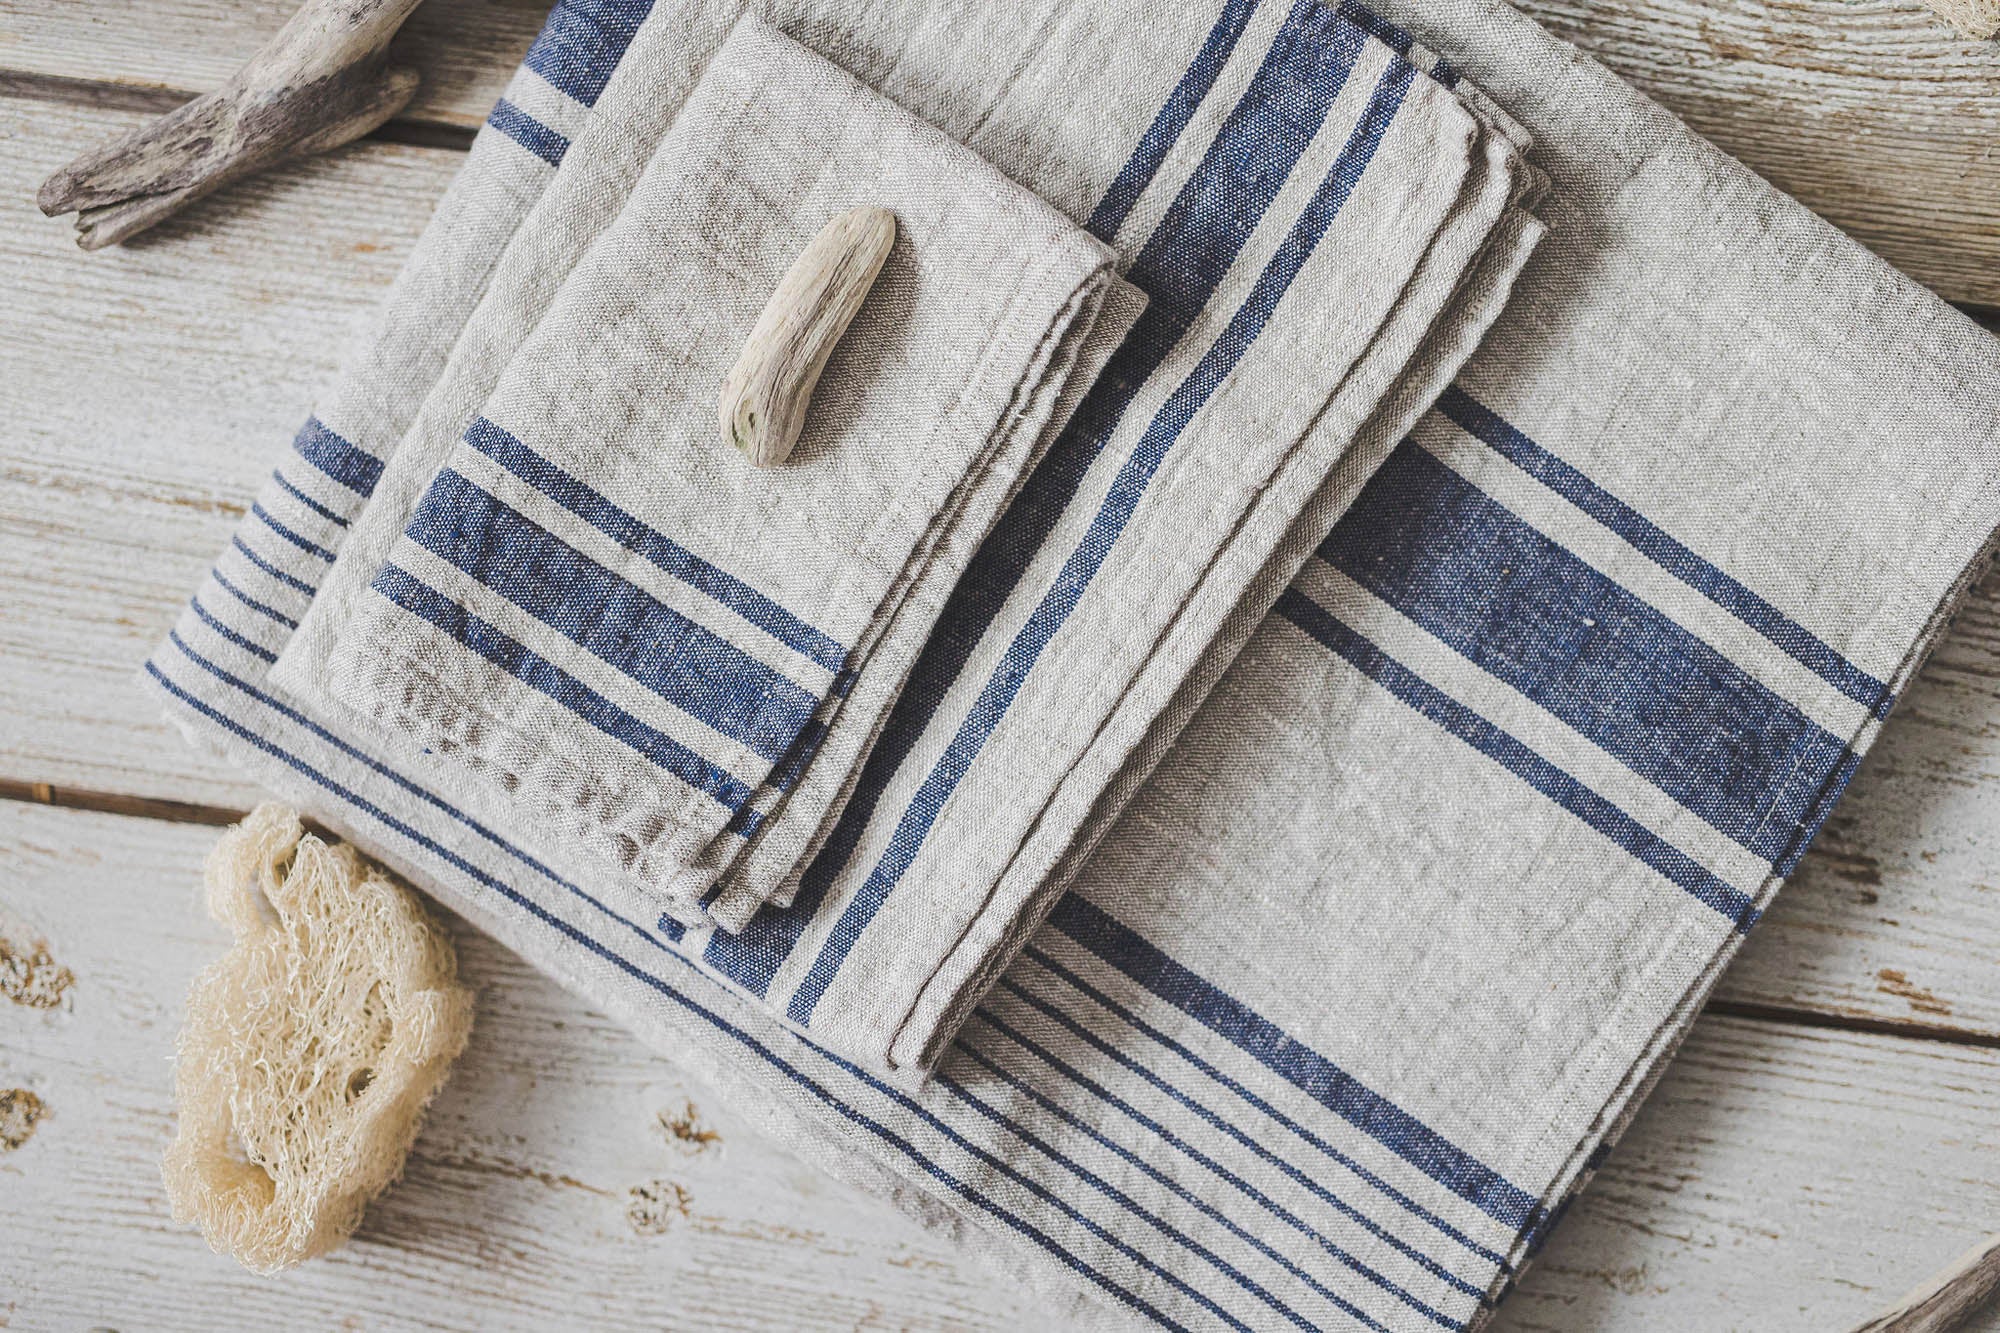 Linen bath towels with blue stripes